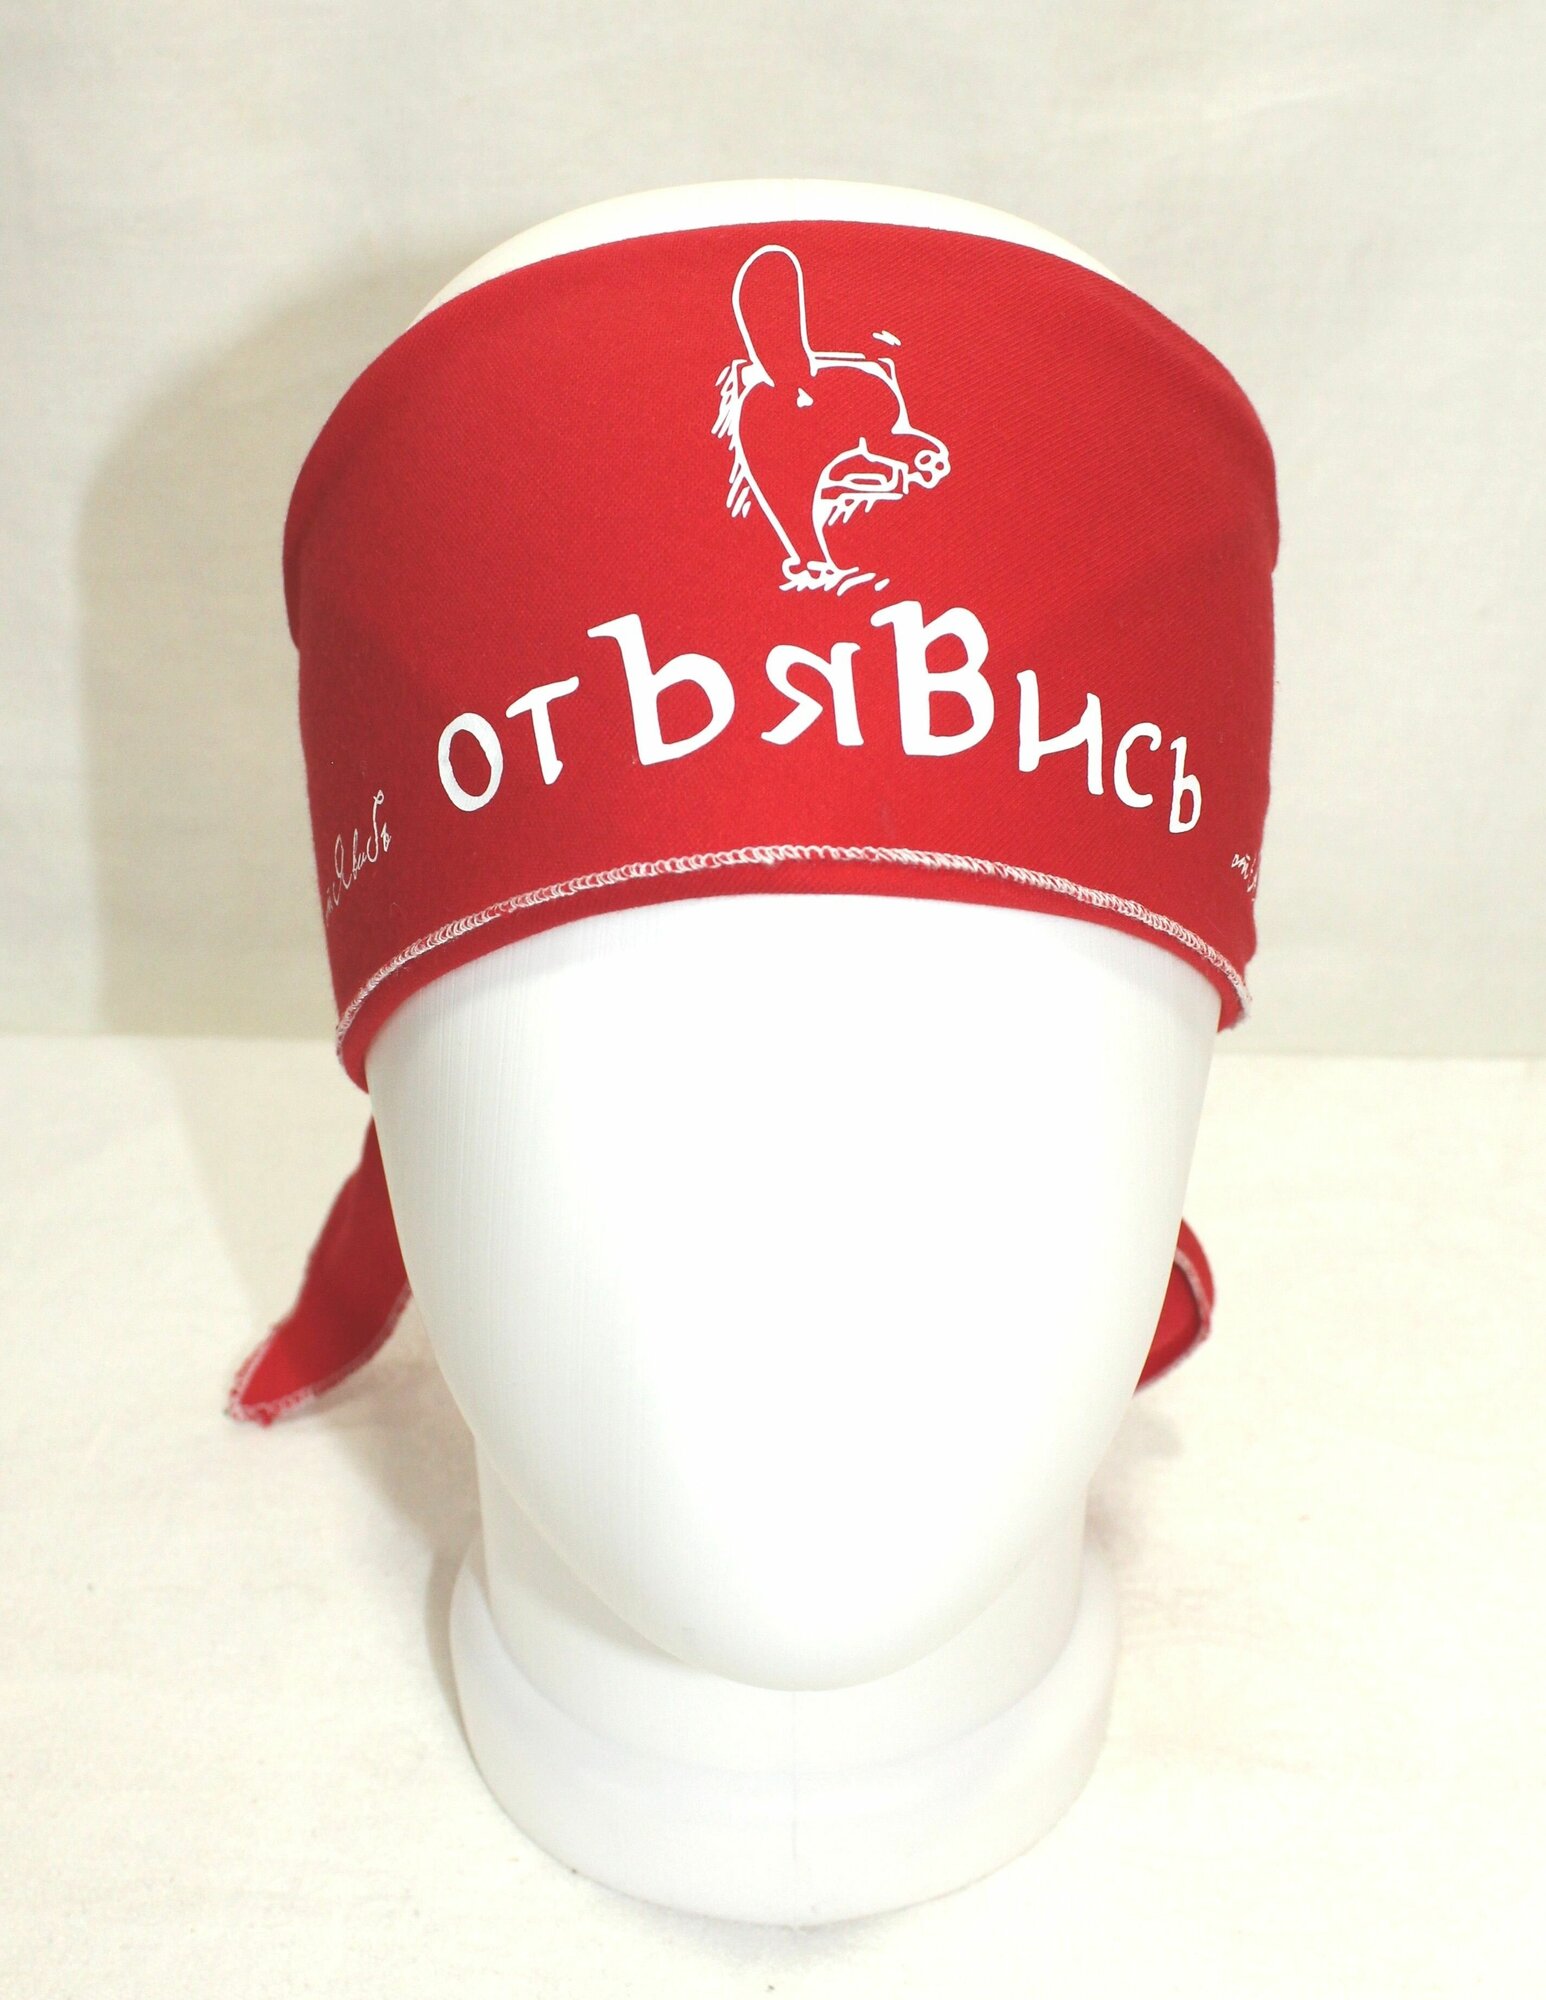 Бандана  Бандана (косынка треугольная) красная с надписью "Отъявись"